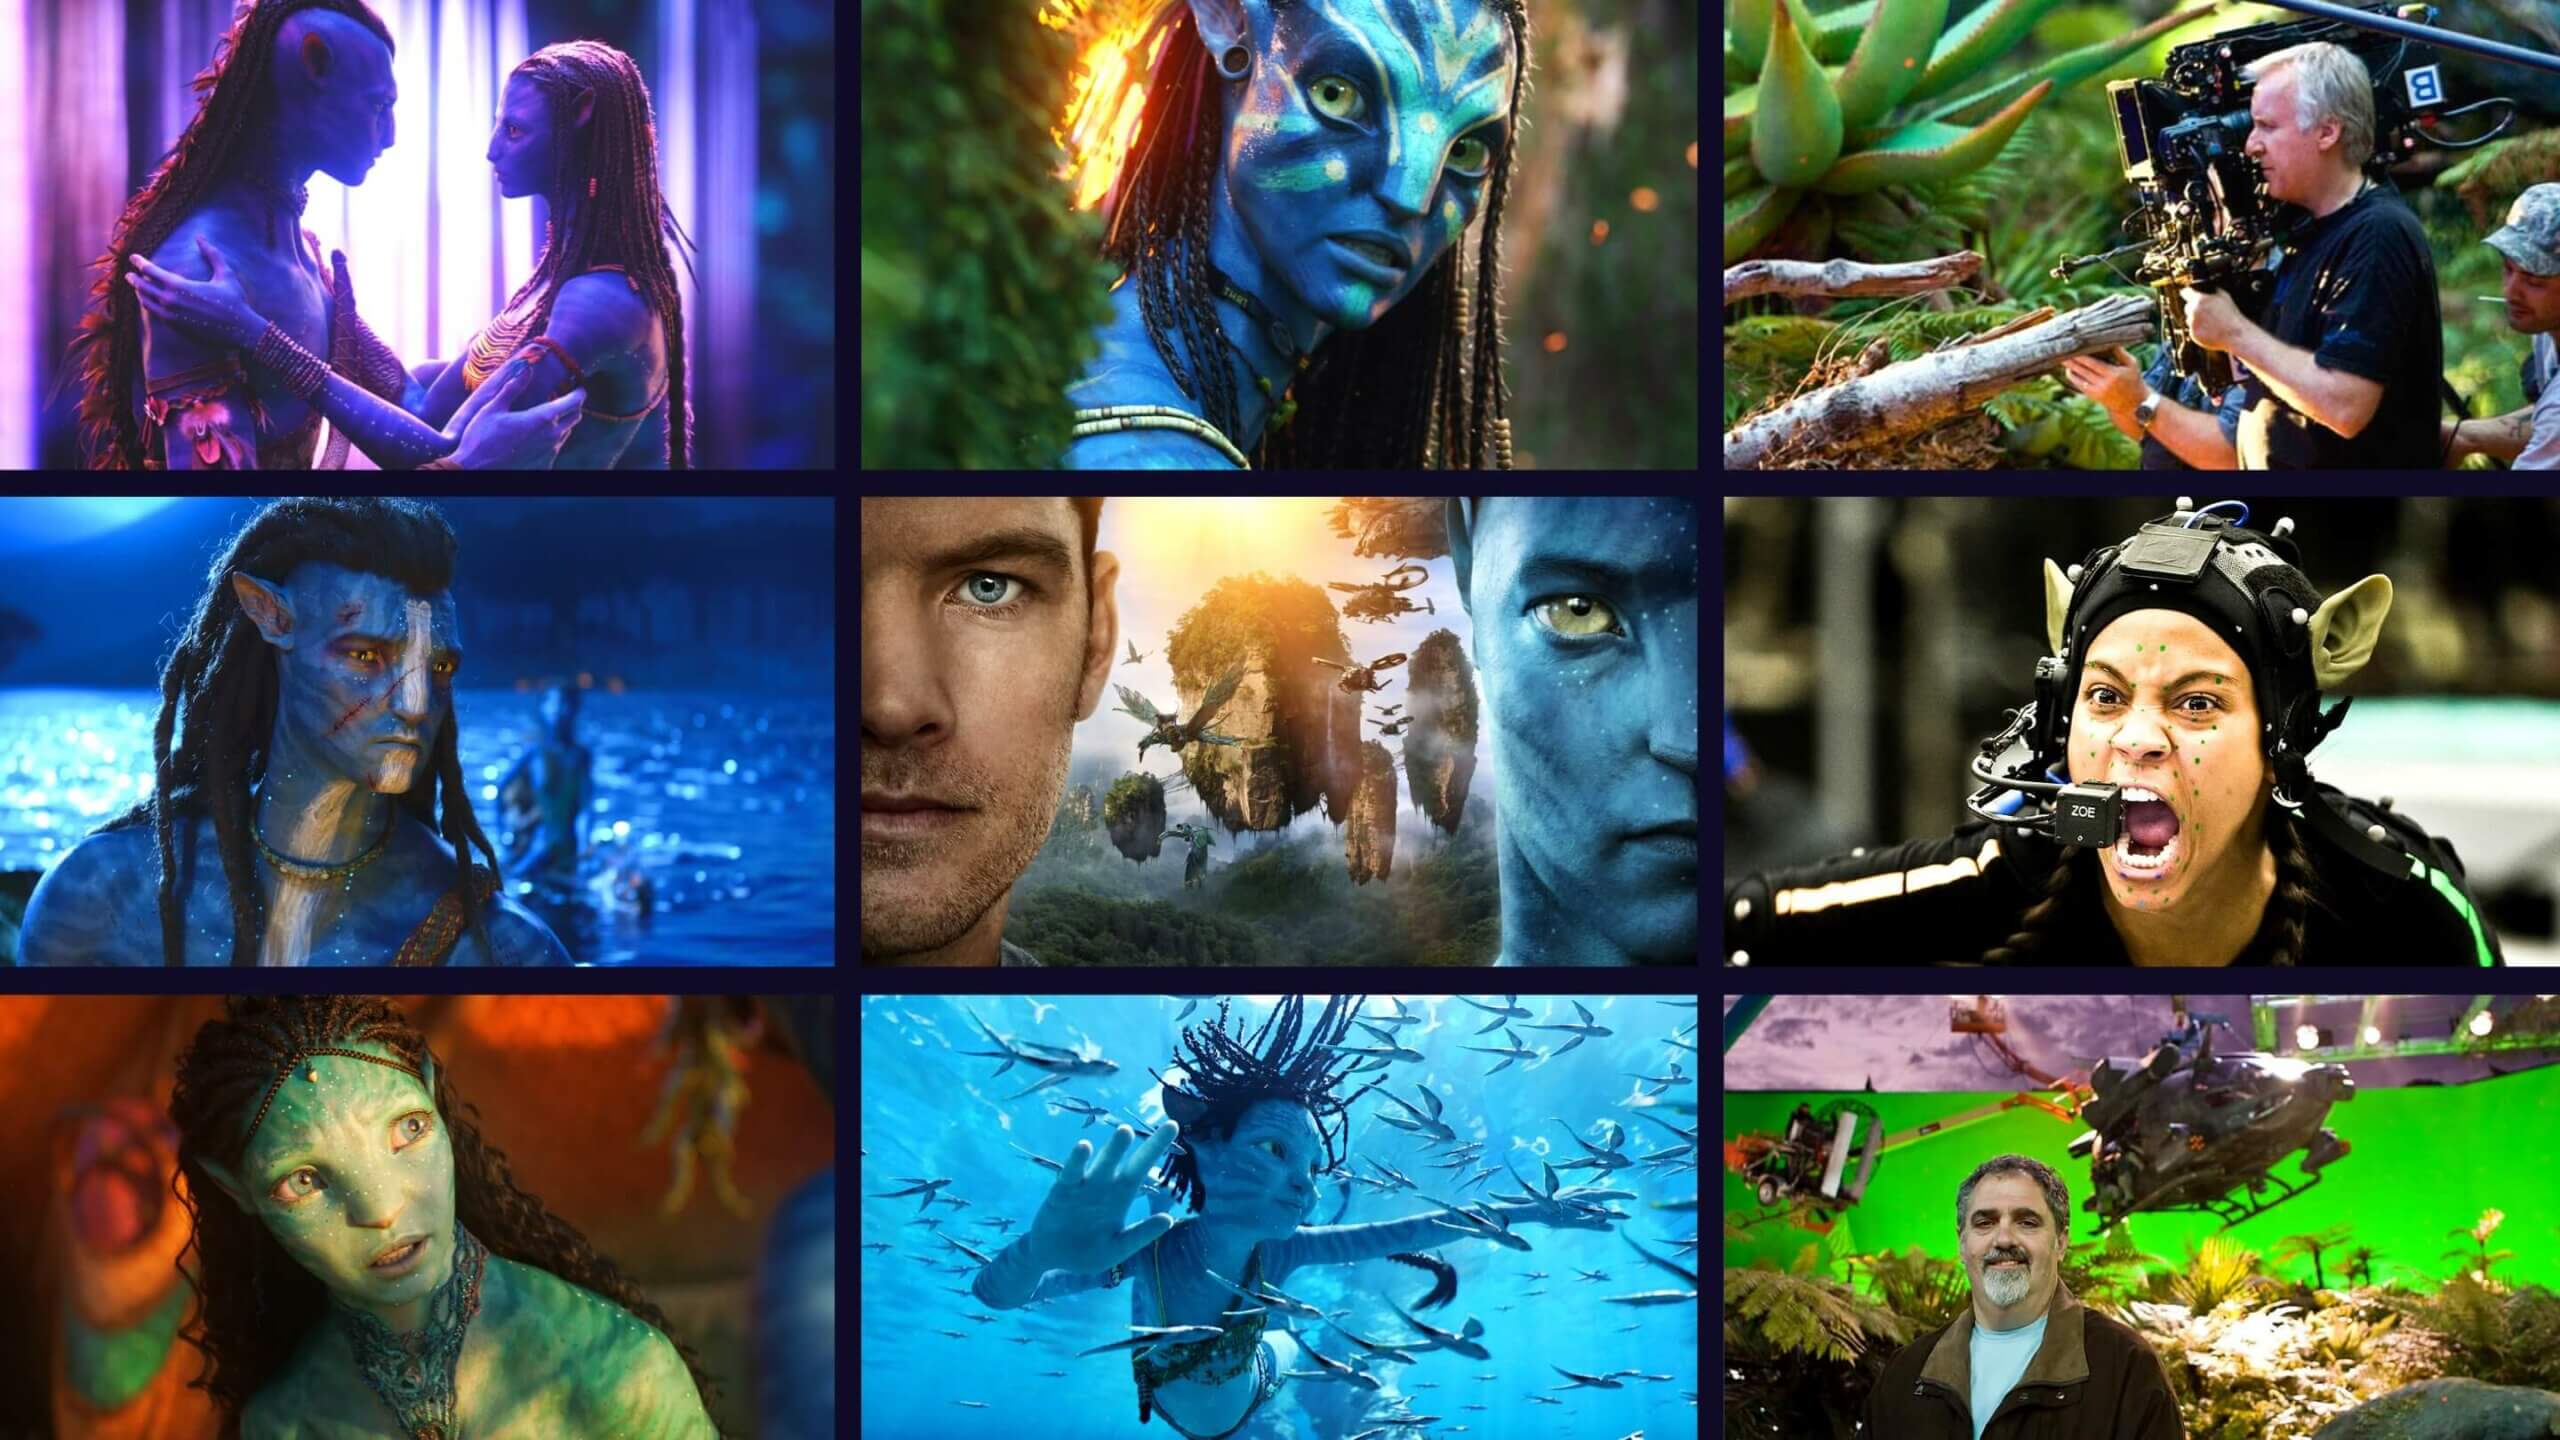 Avatar 2 dời chiếu 1 năm Disney công bố lịch 3 phim Star Wars mới  Tuổi  Trẻ Online